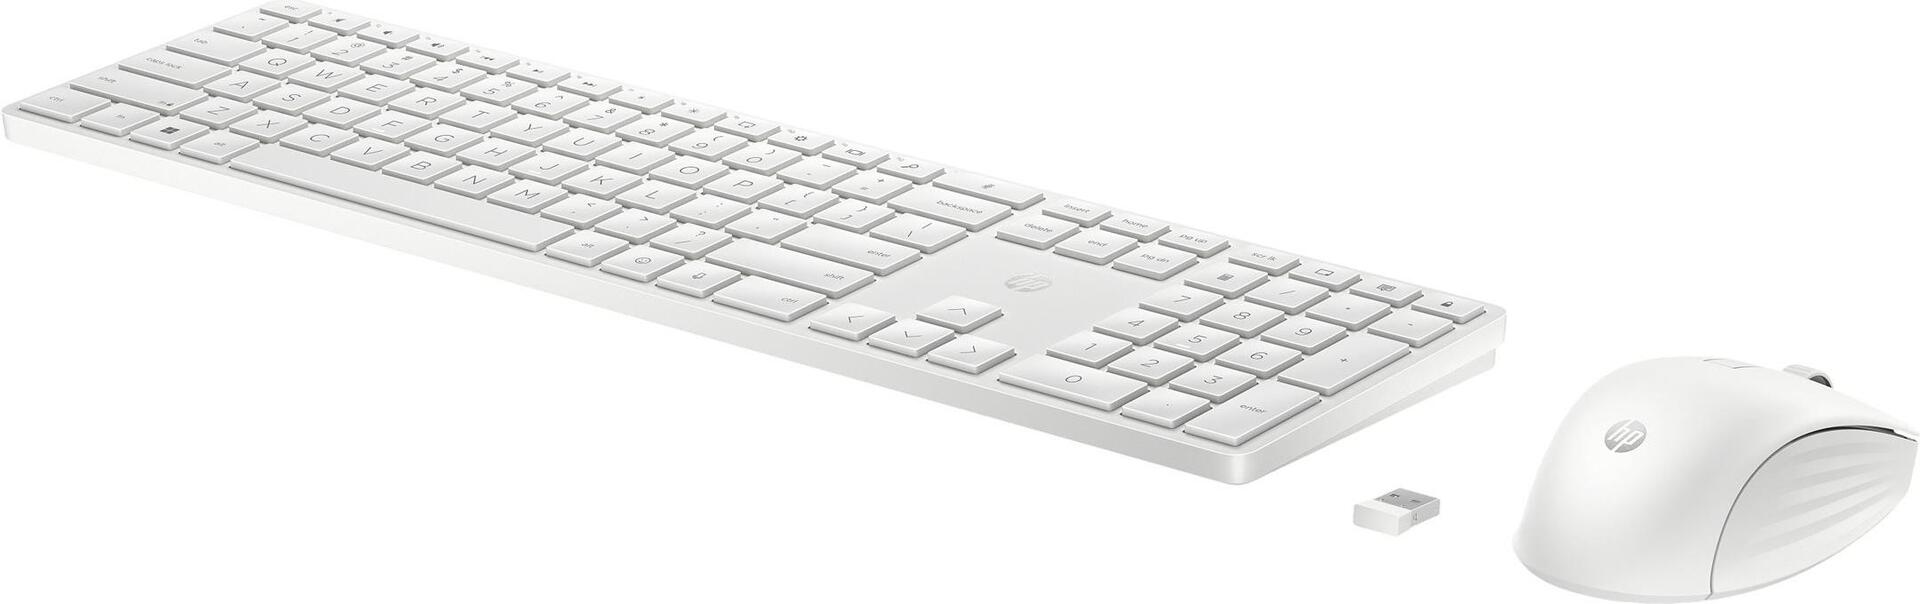 HP 655 Tastatur-und-Maus-Set kabellos 2.4 GHz 860P8AA#ABD